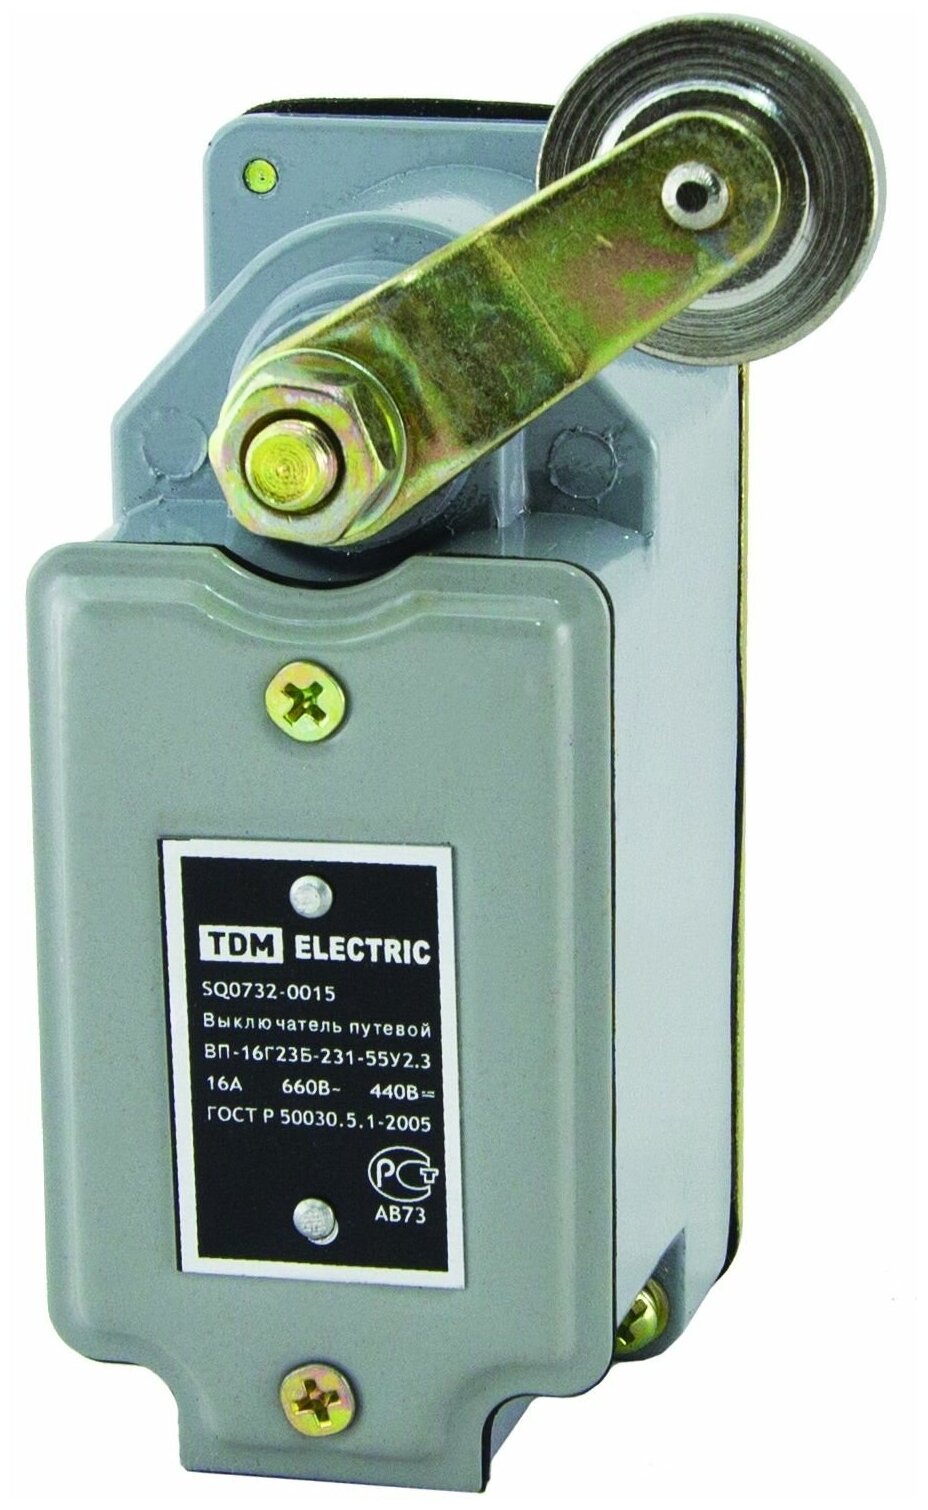 Выключатель путевой ВП-16Г23Б-231-55У23 с самовозвратом 16А 660В IP55 TDM